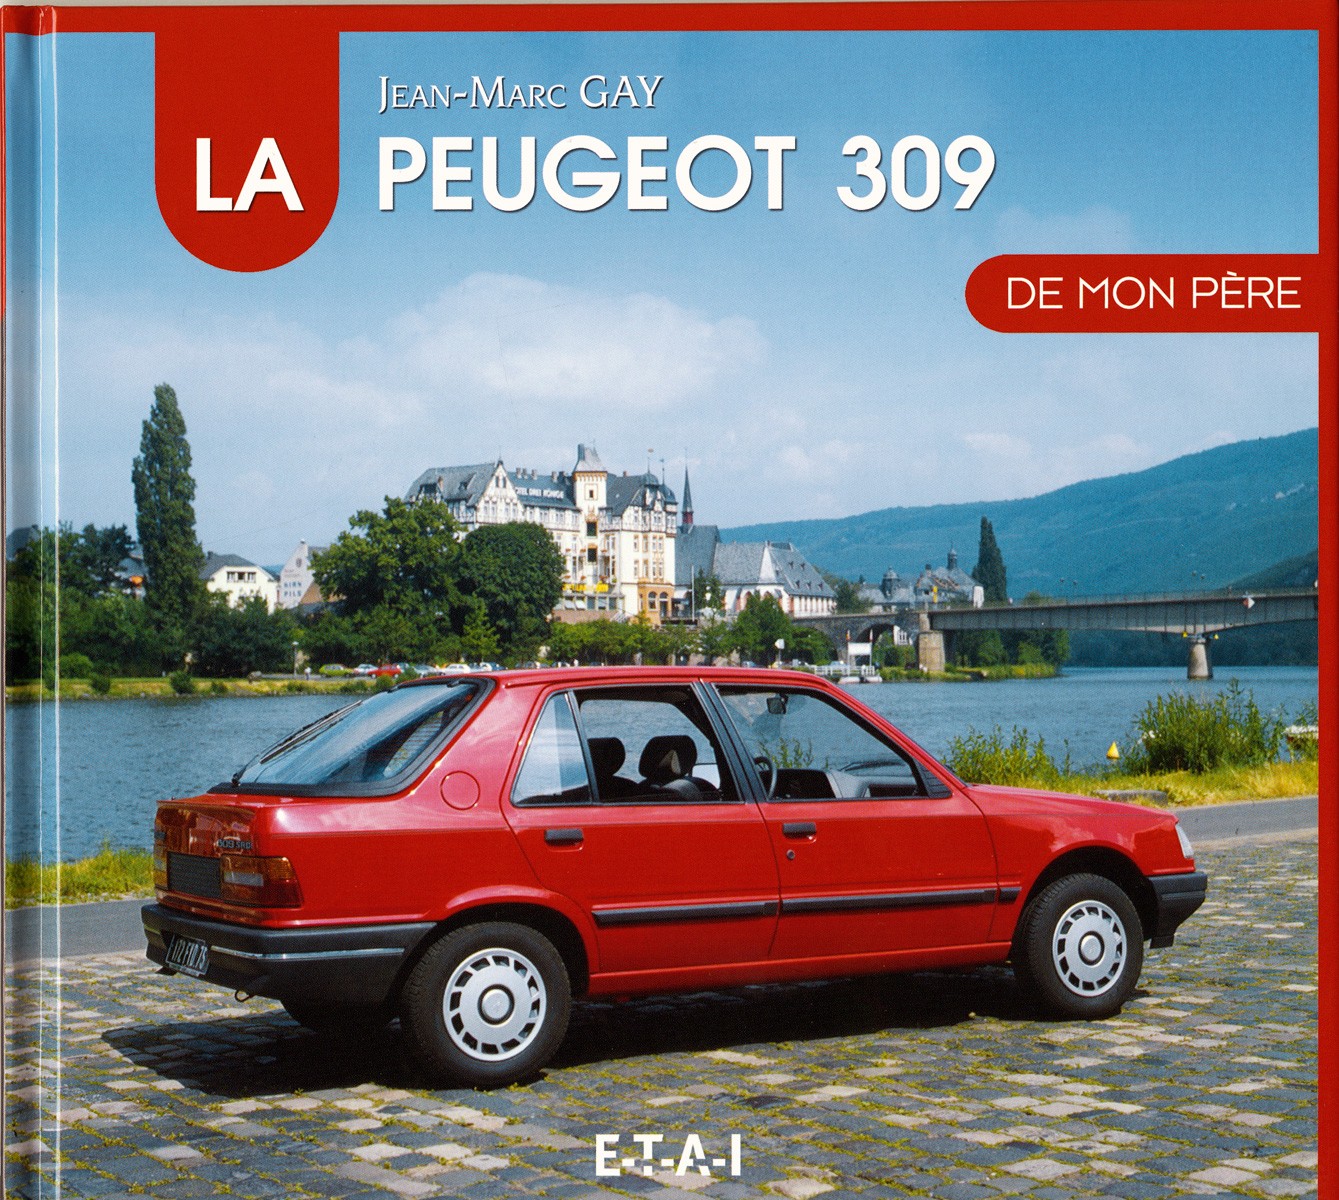 Peugeot 309 de mon pere